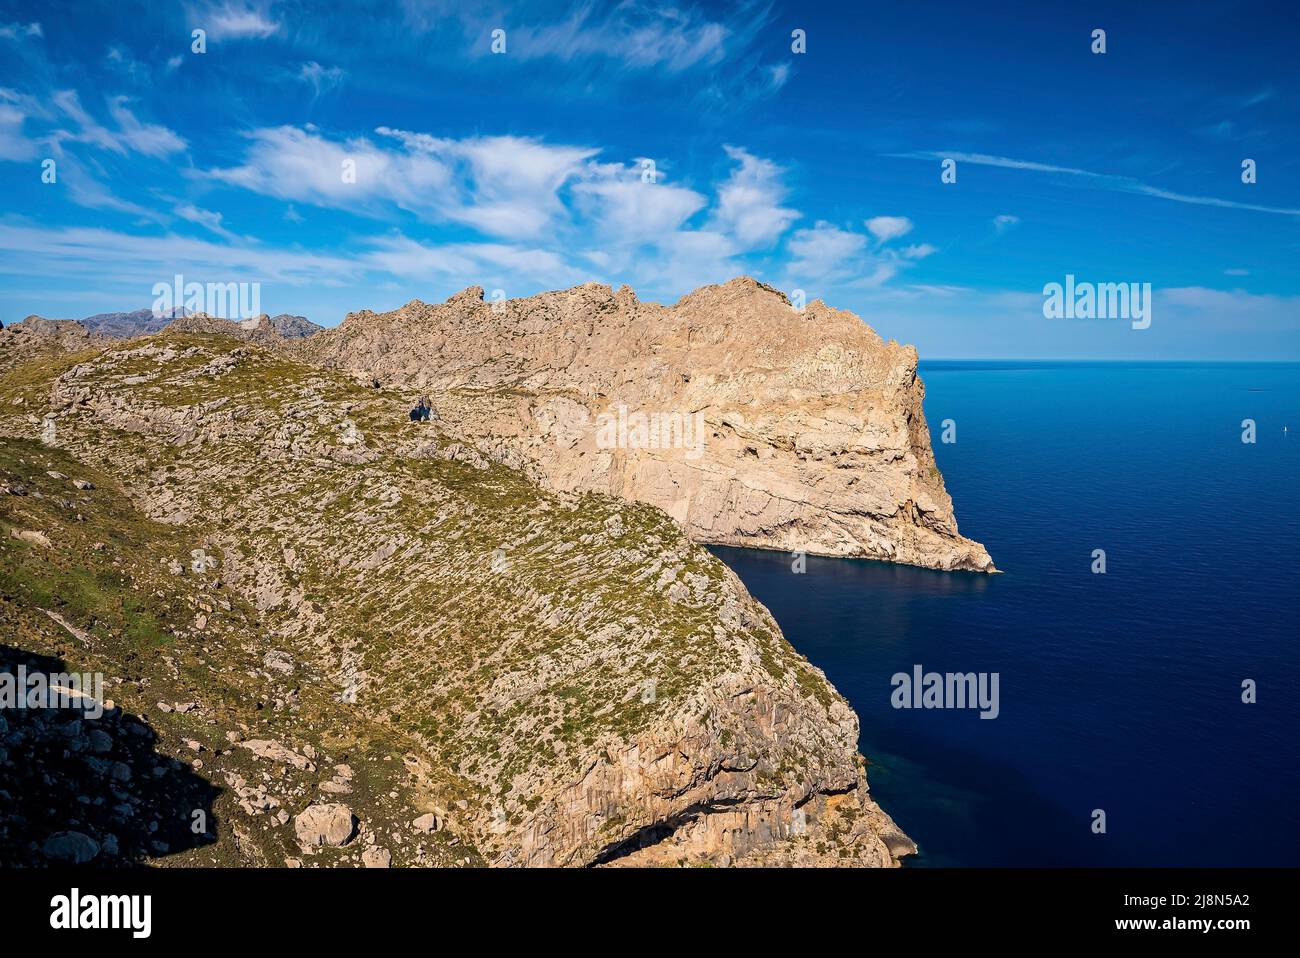 Vue panoramique sur les paysages marins méditerranéens par une falaise rocheuse en été Banque D'Images